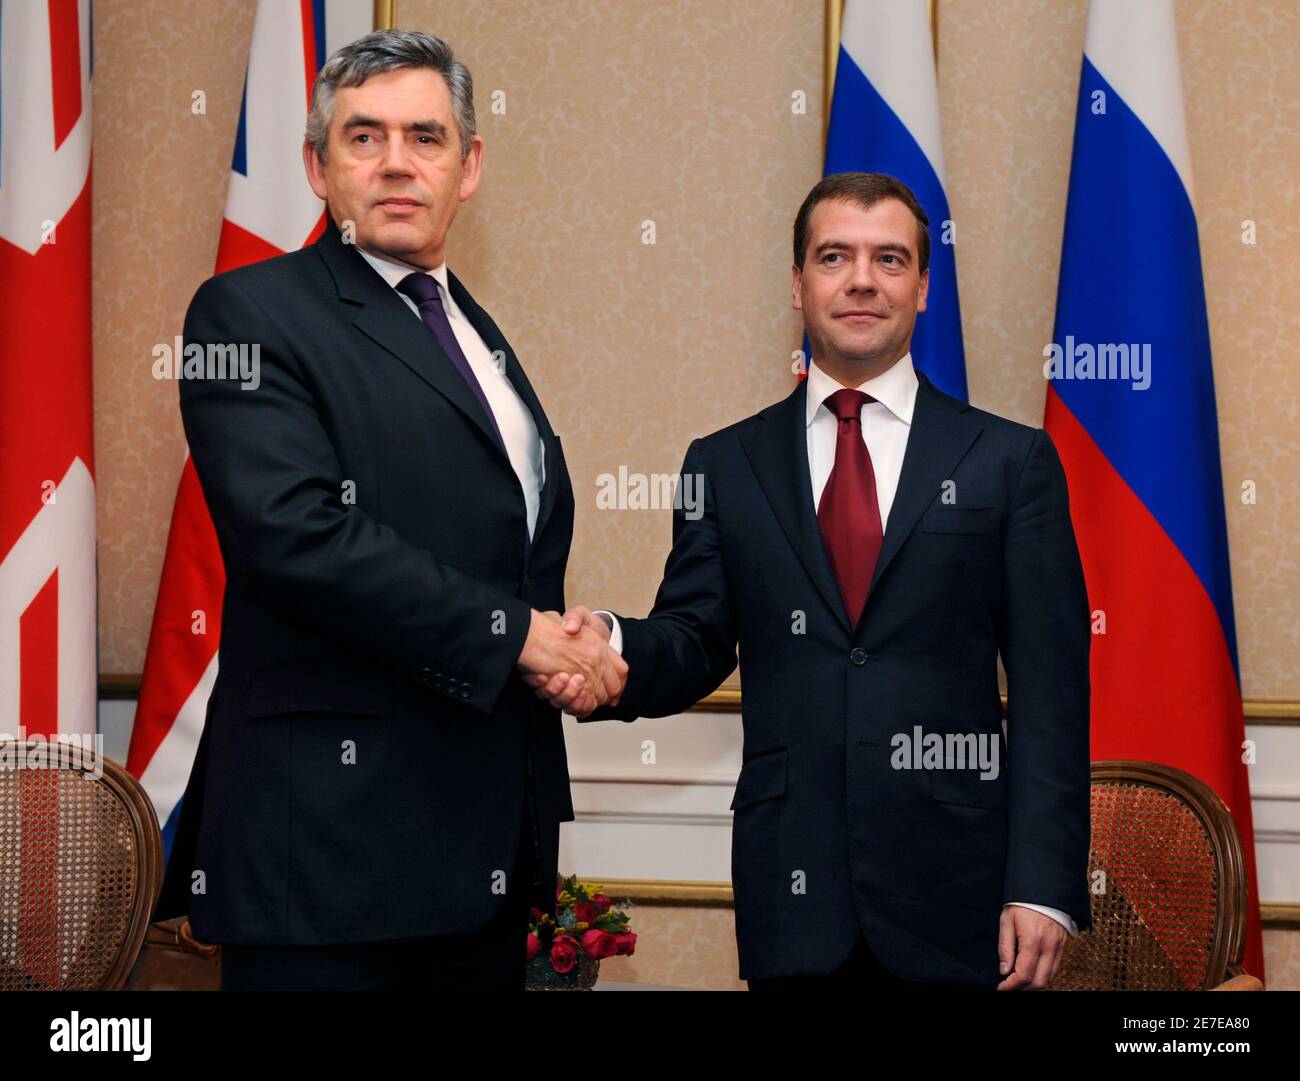 Britische Premierminister Gordon Brown (L) schüttelt Hände mit russischen Präsidenten Dmitry Medvedev bei einem bilateralen Treffen nach dem Gipfeltreffen über die Finanzmärkte und die Weltwirtschaft in Washington, 15. November 2008.    REUTERS/Mike Theiler (Vereinigte Staaten) Stockfoto